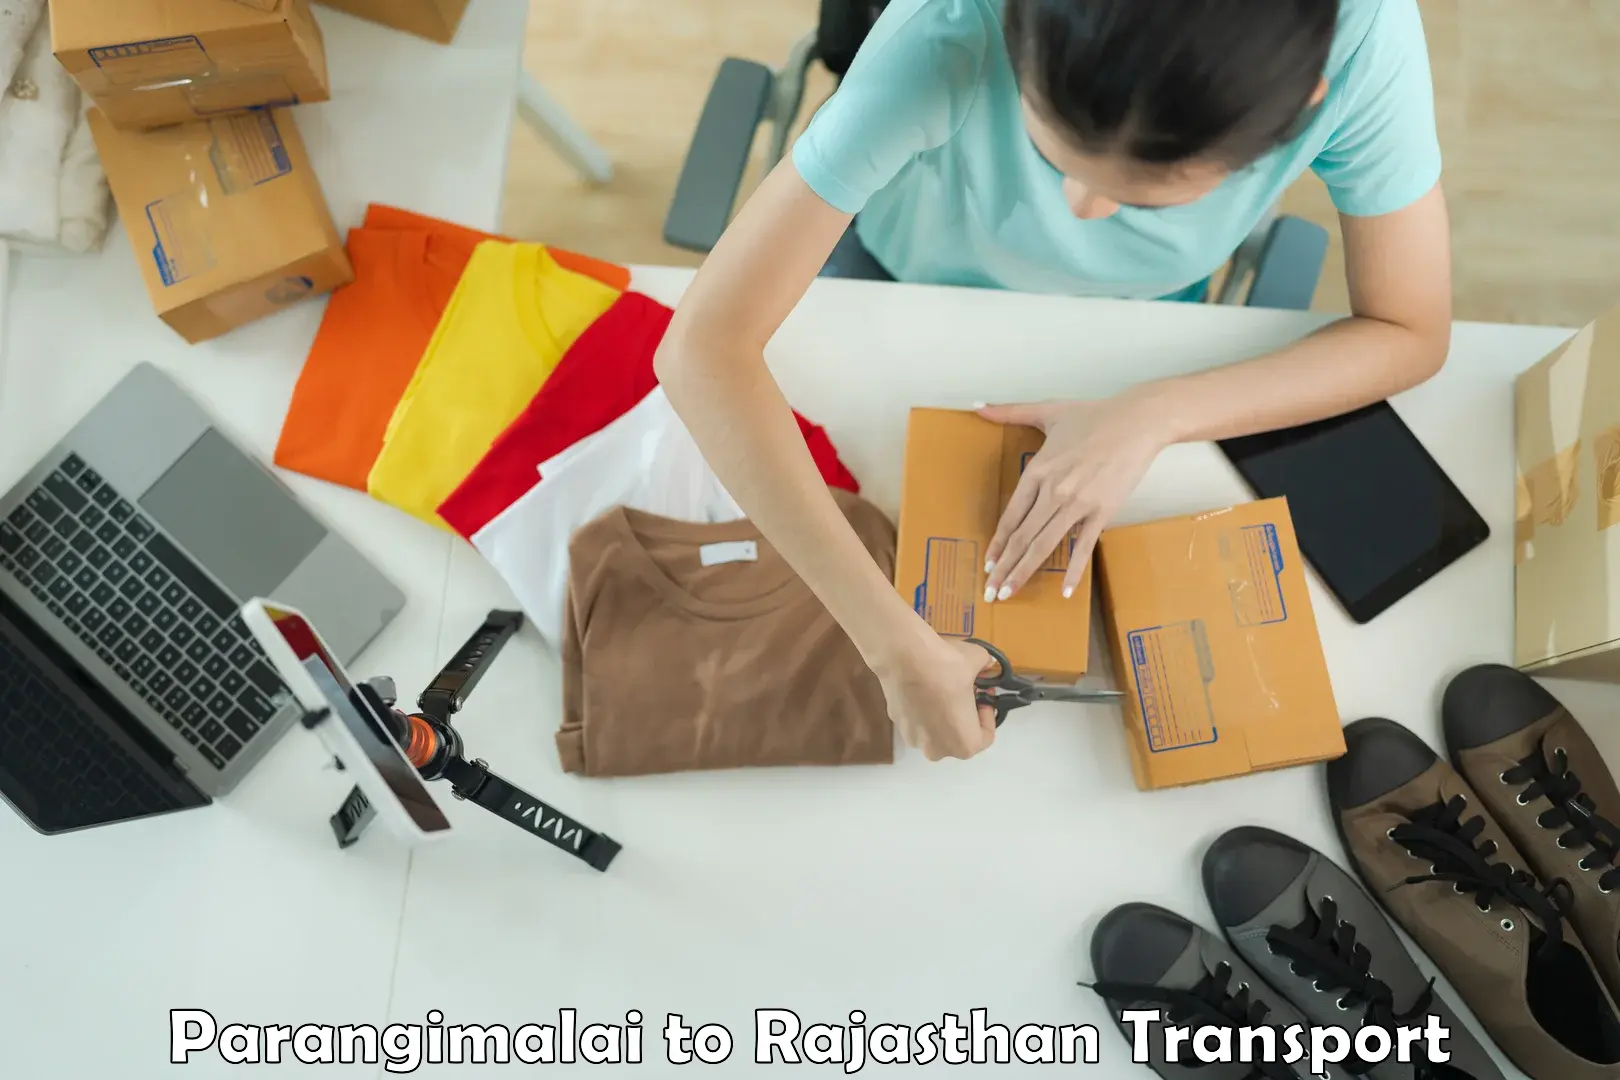 Furniture transport service Parangimalai to Kaman